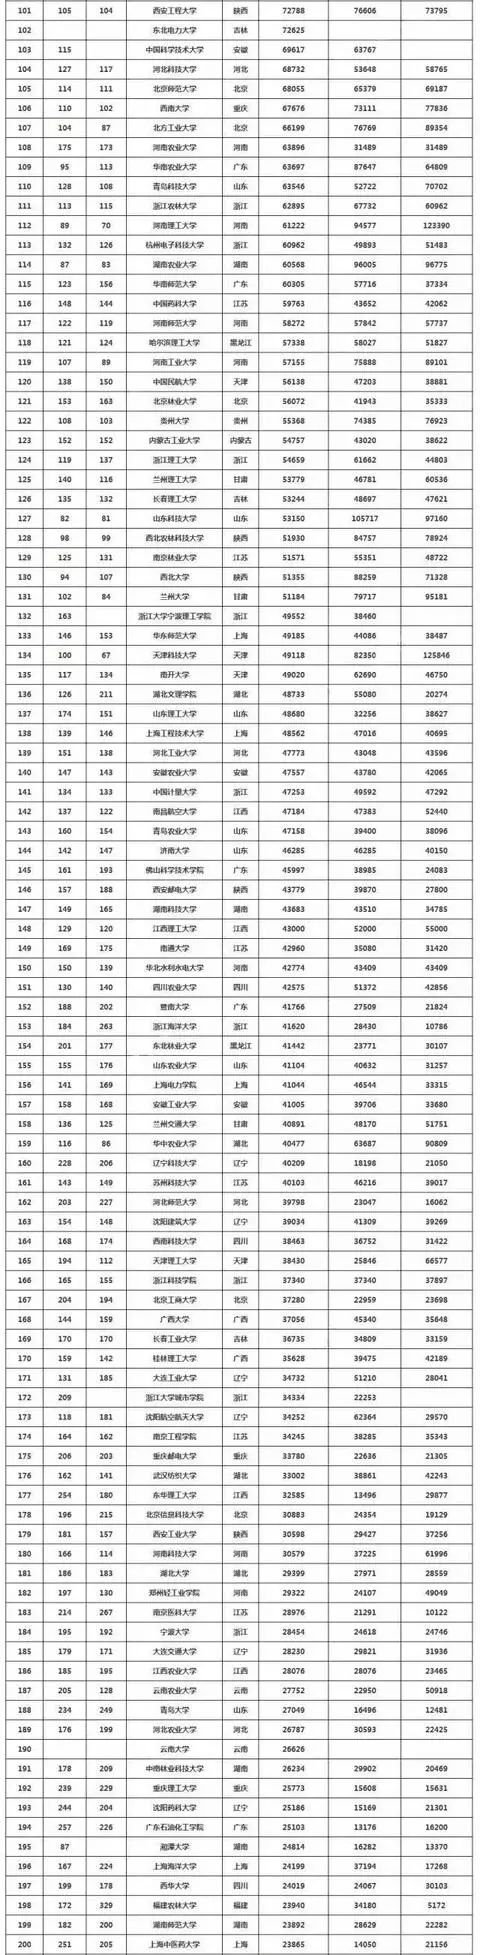 2017中国高校企业科研经费统计：哈工大超清华第1，西工大超浙大